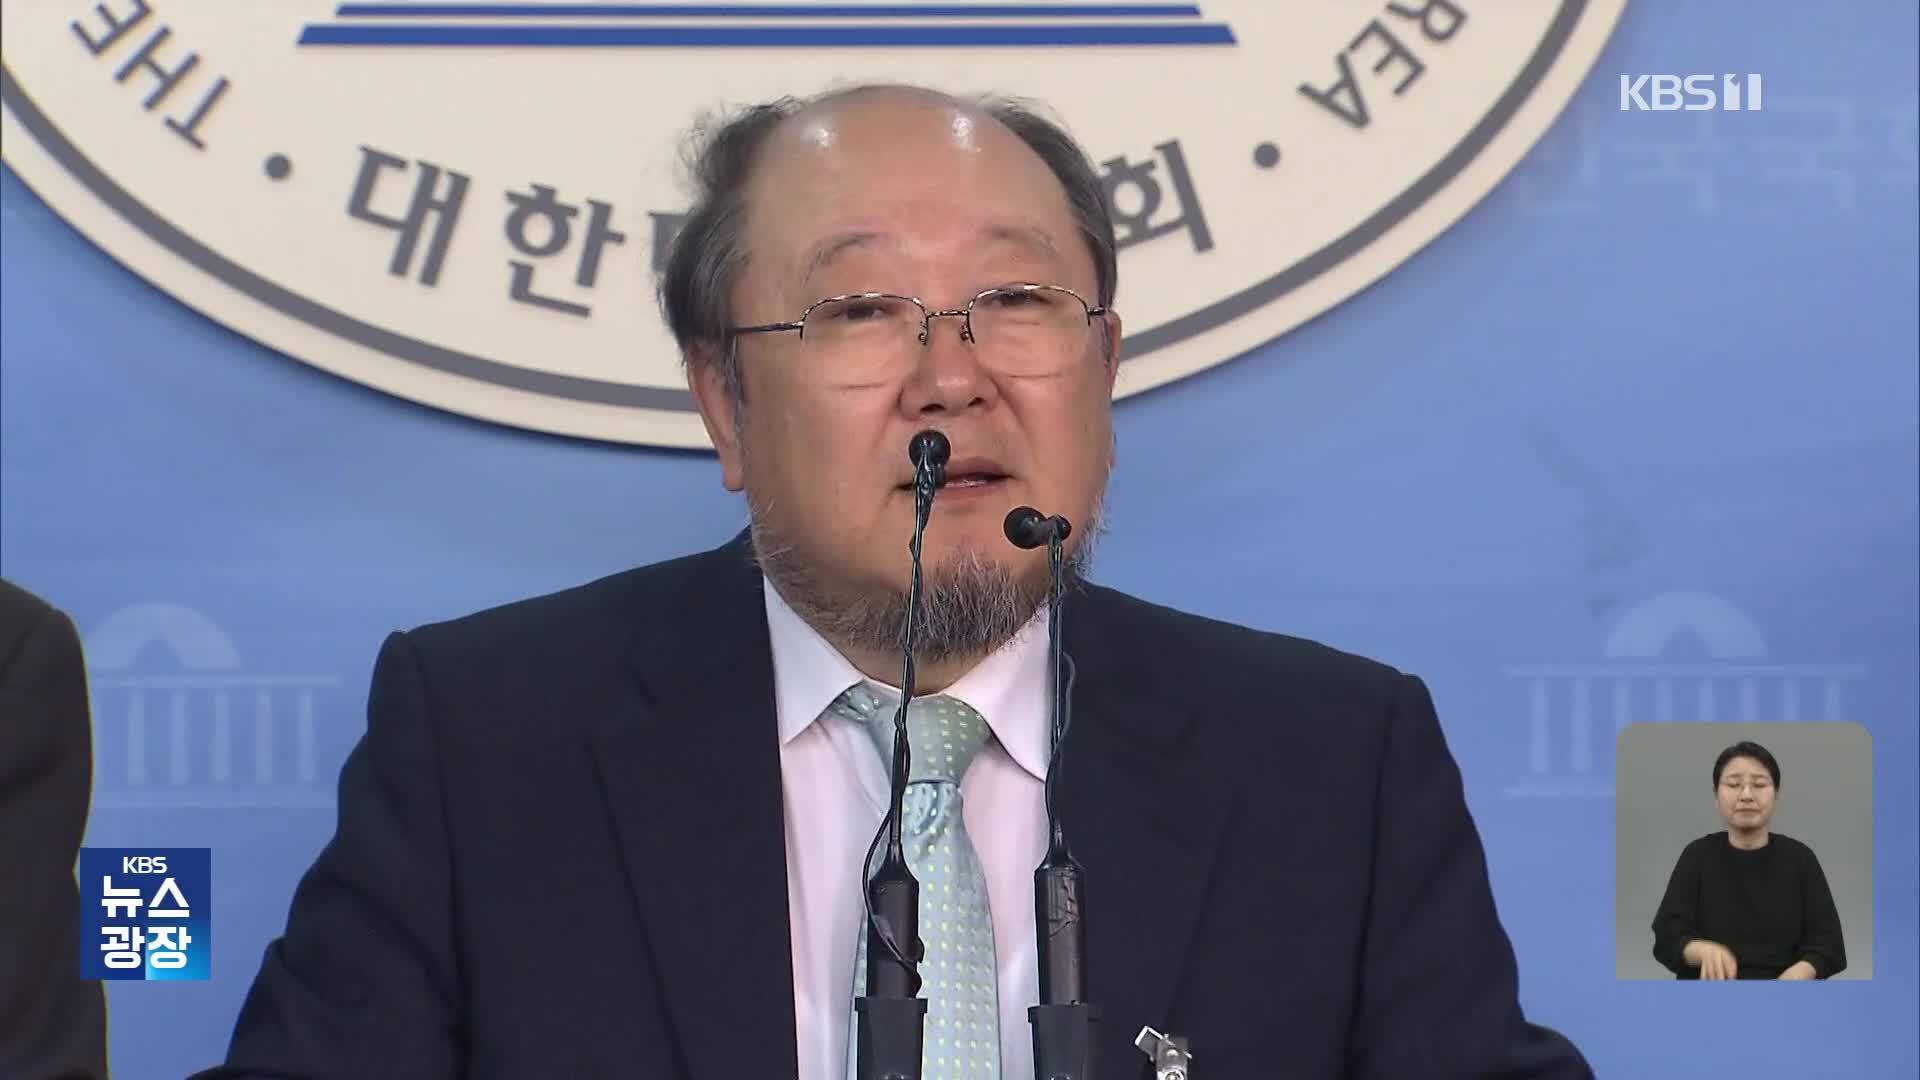 ‘천안함 자폭’ 발언 논란, 민주당 혁신위원장 9시간 만에 사퇴